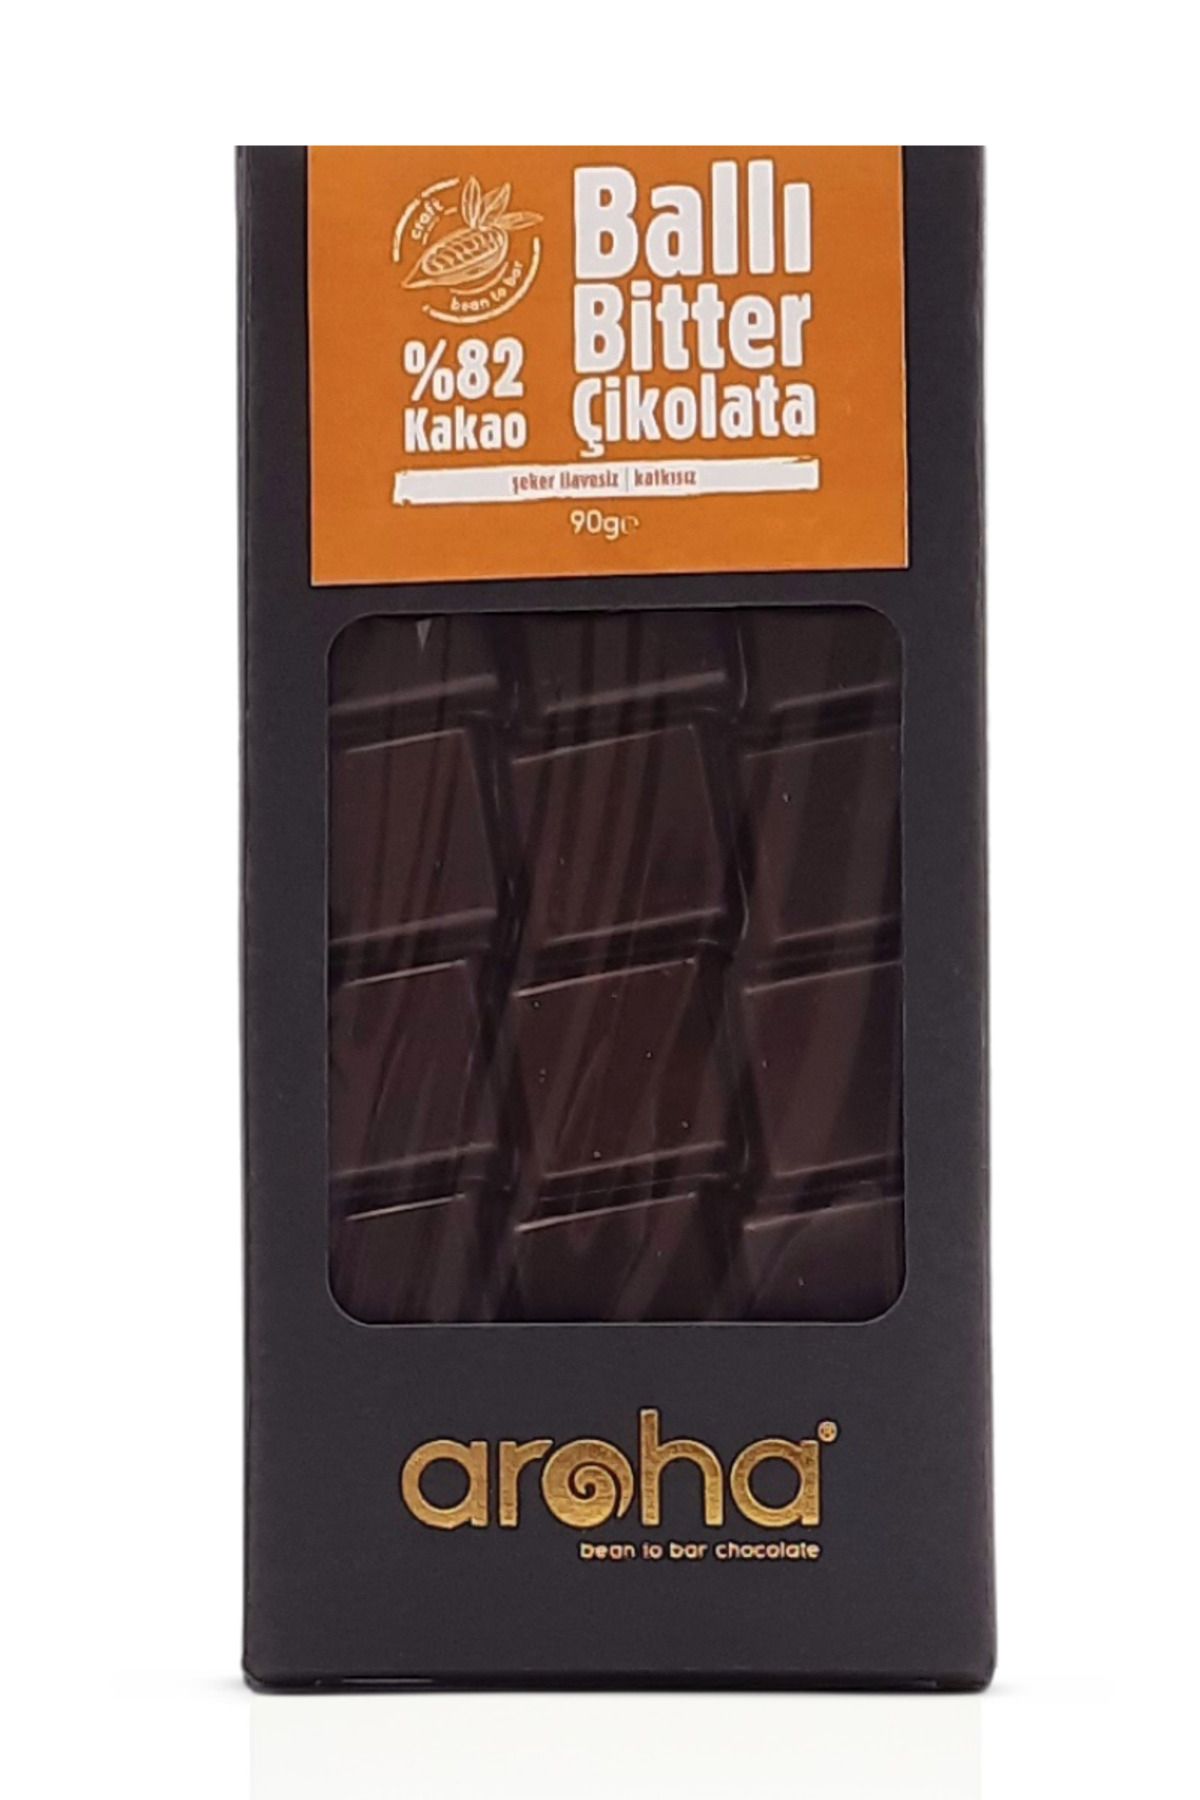 AROHA Single Origin Ghana-şekersiz Glutensiz Ballı Bitter Çikolata. %82 Kakao